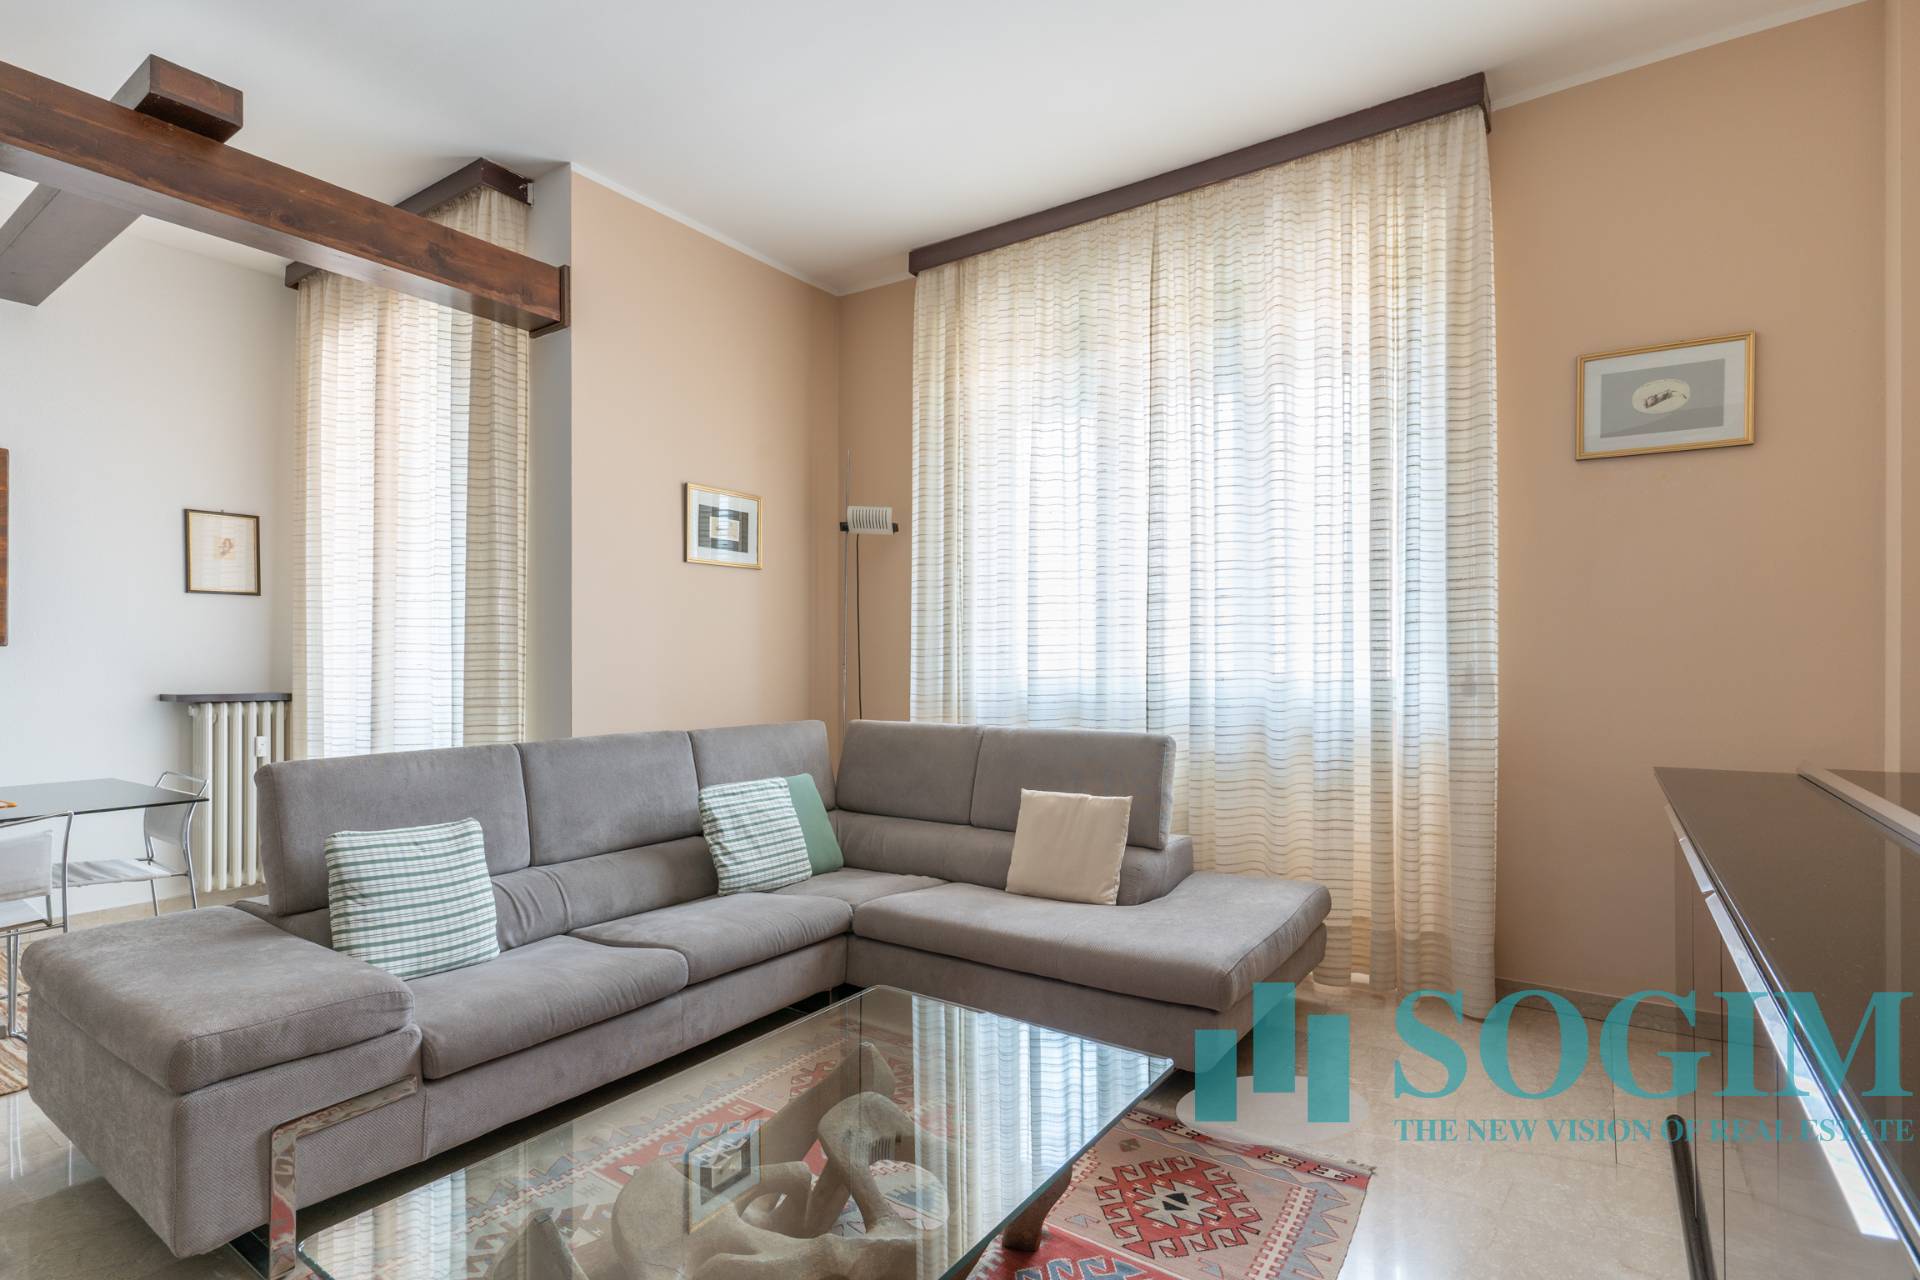 Appartamento in affitto a Sesto San Giovanni, 3 locali, zona Località: Rond?, prezzo € 1.200 | CambioCasa.it